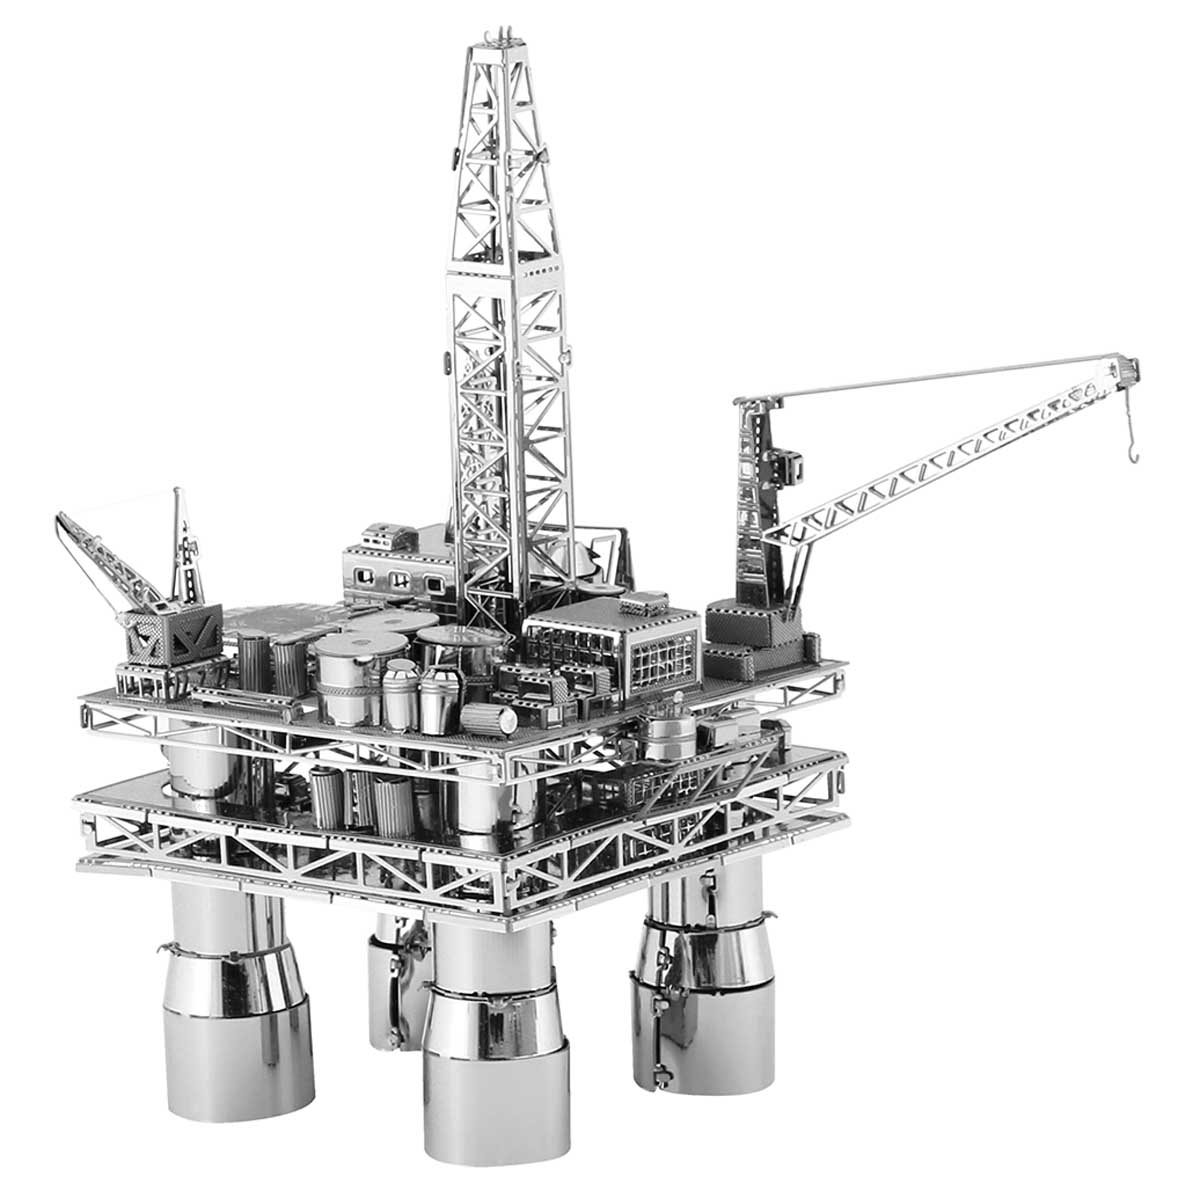 Offshore Oil Rig & Oil Tanker Construction 3D Puzzle